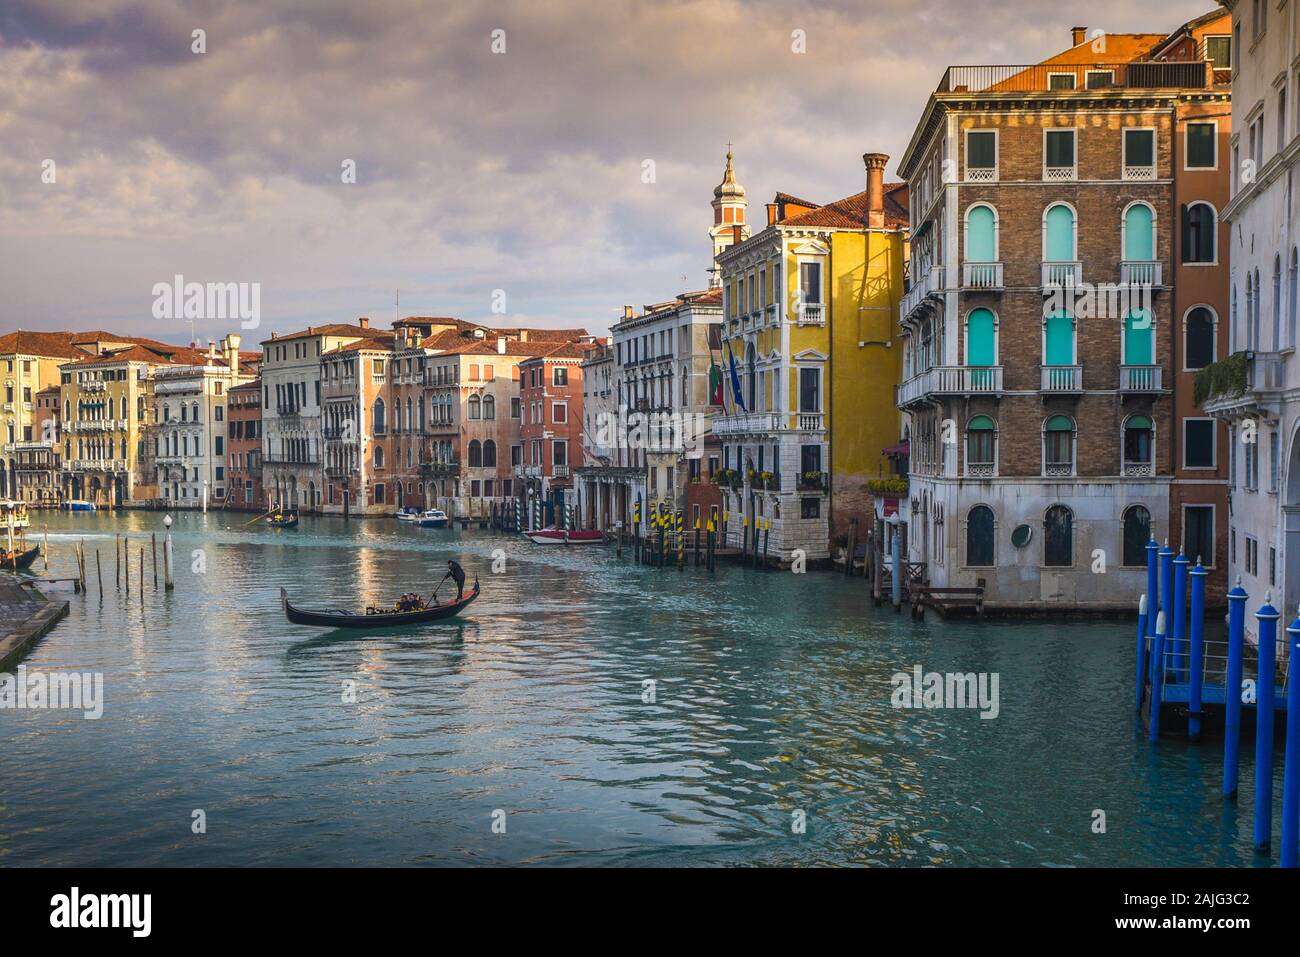 Venise Grand Canal (Canal Grande) avec gondole et gondolier, réflexions sur l'eau, du Pont du Rialto et de maisons typiques de Venise et de l'architecture Banque D'Images